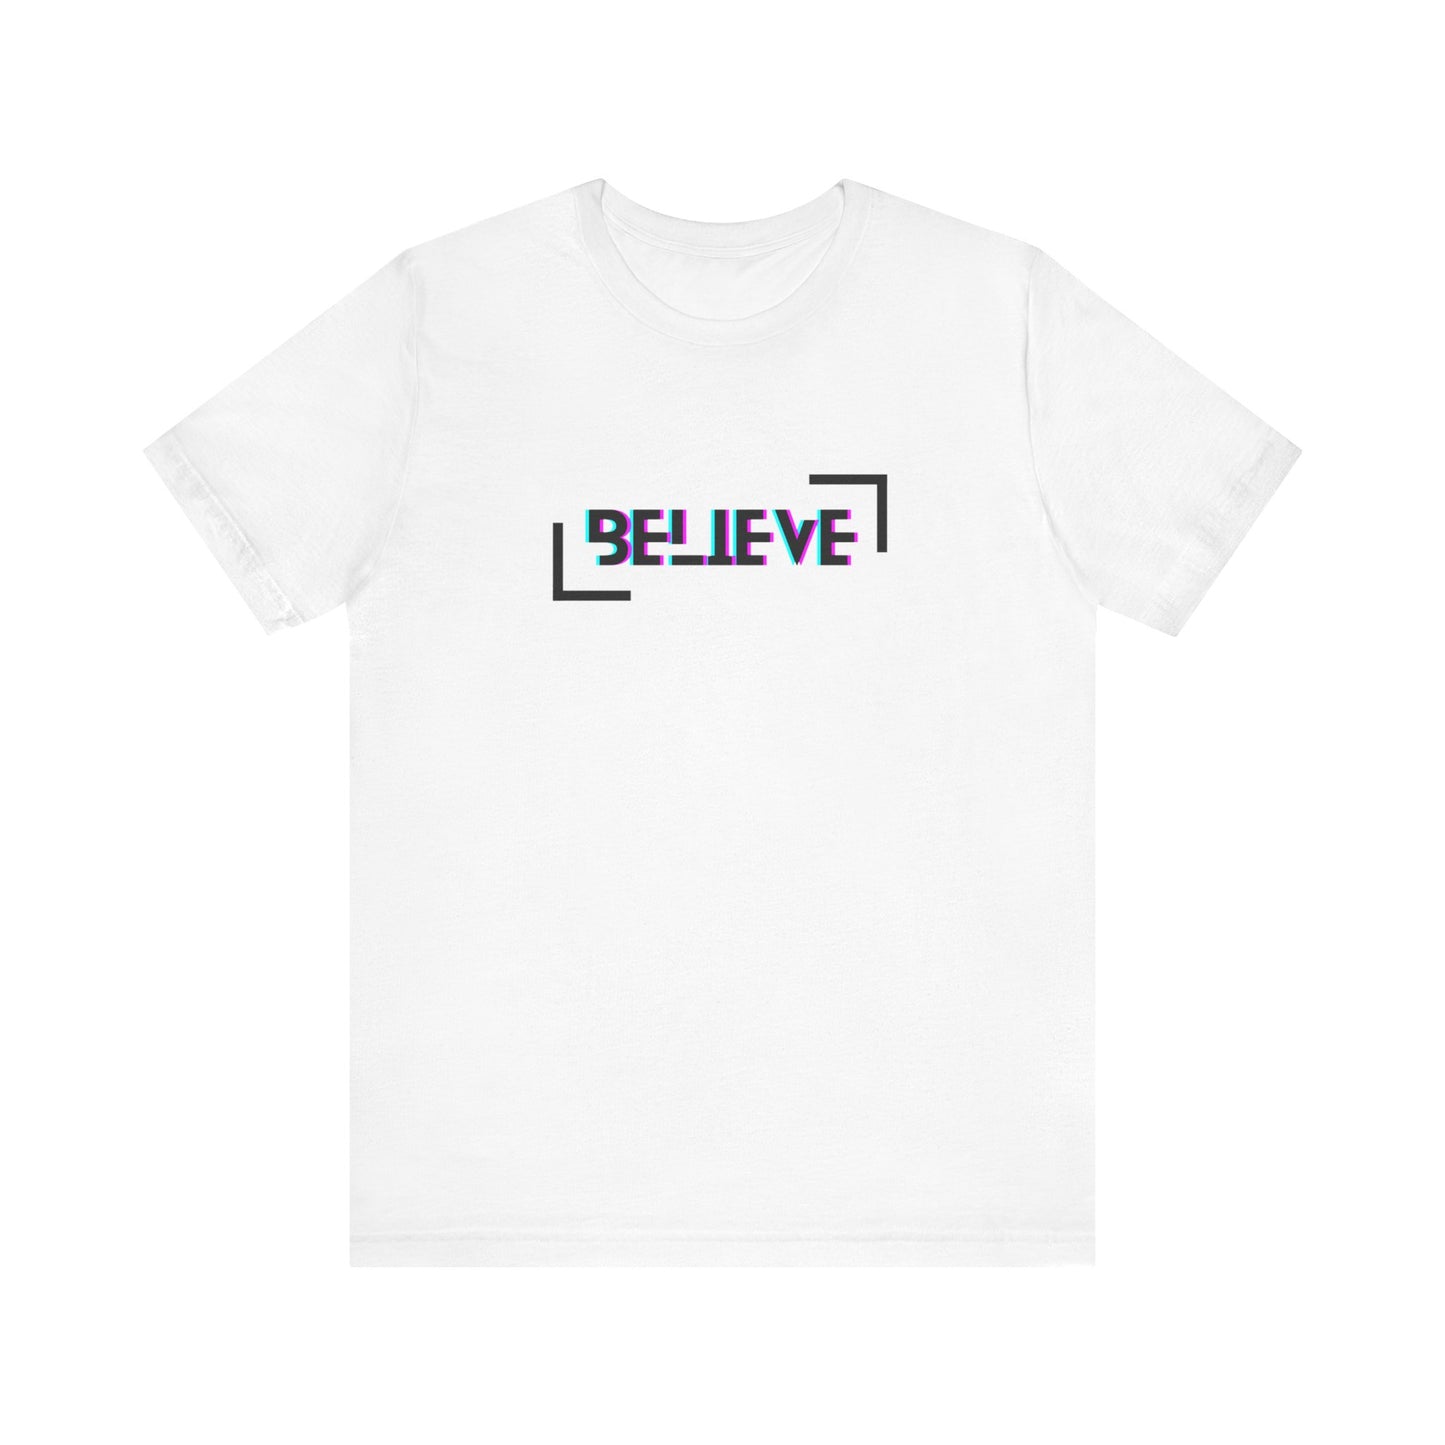 “Believe” Tee